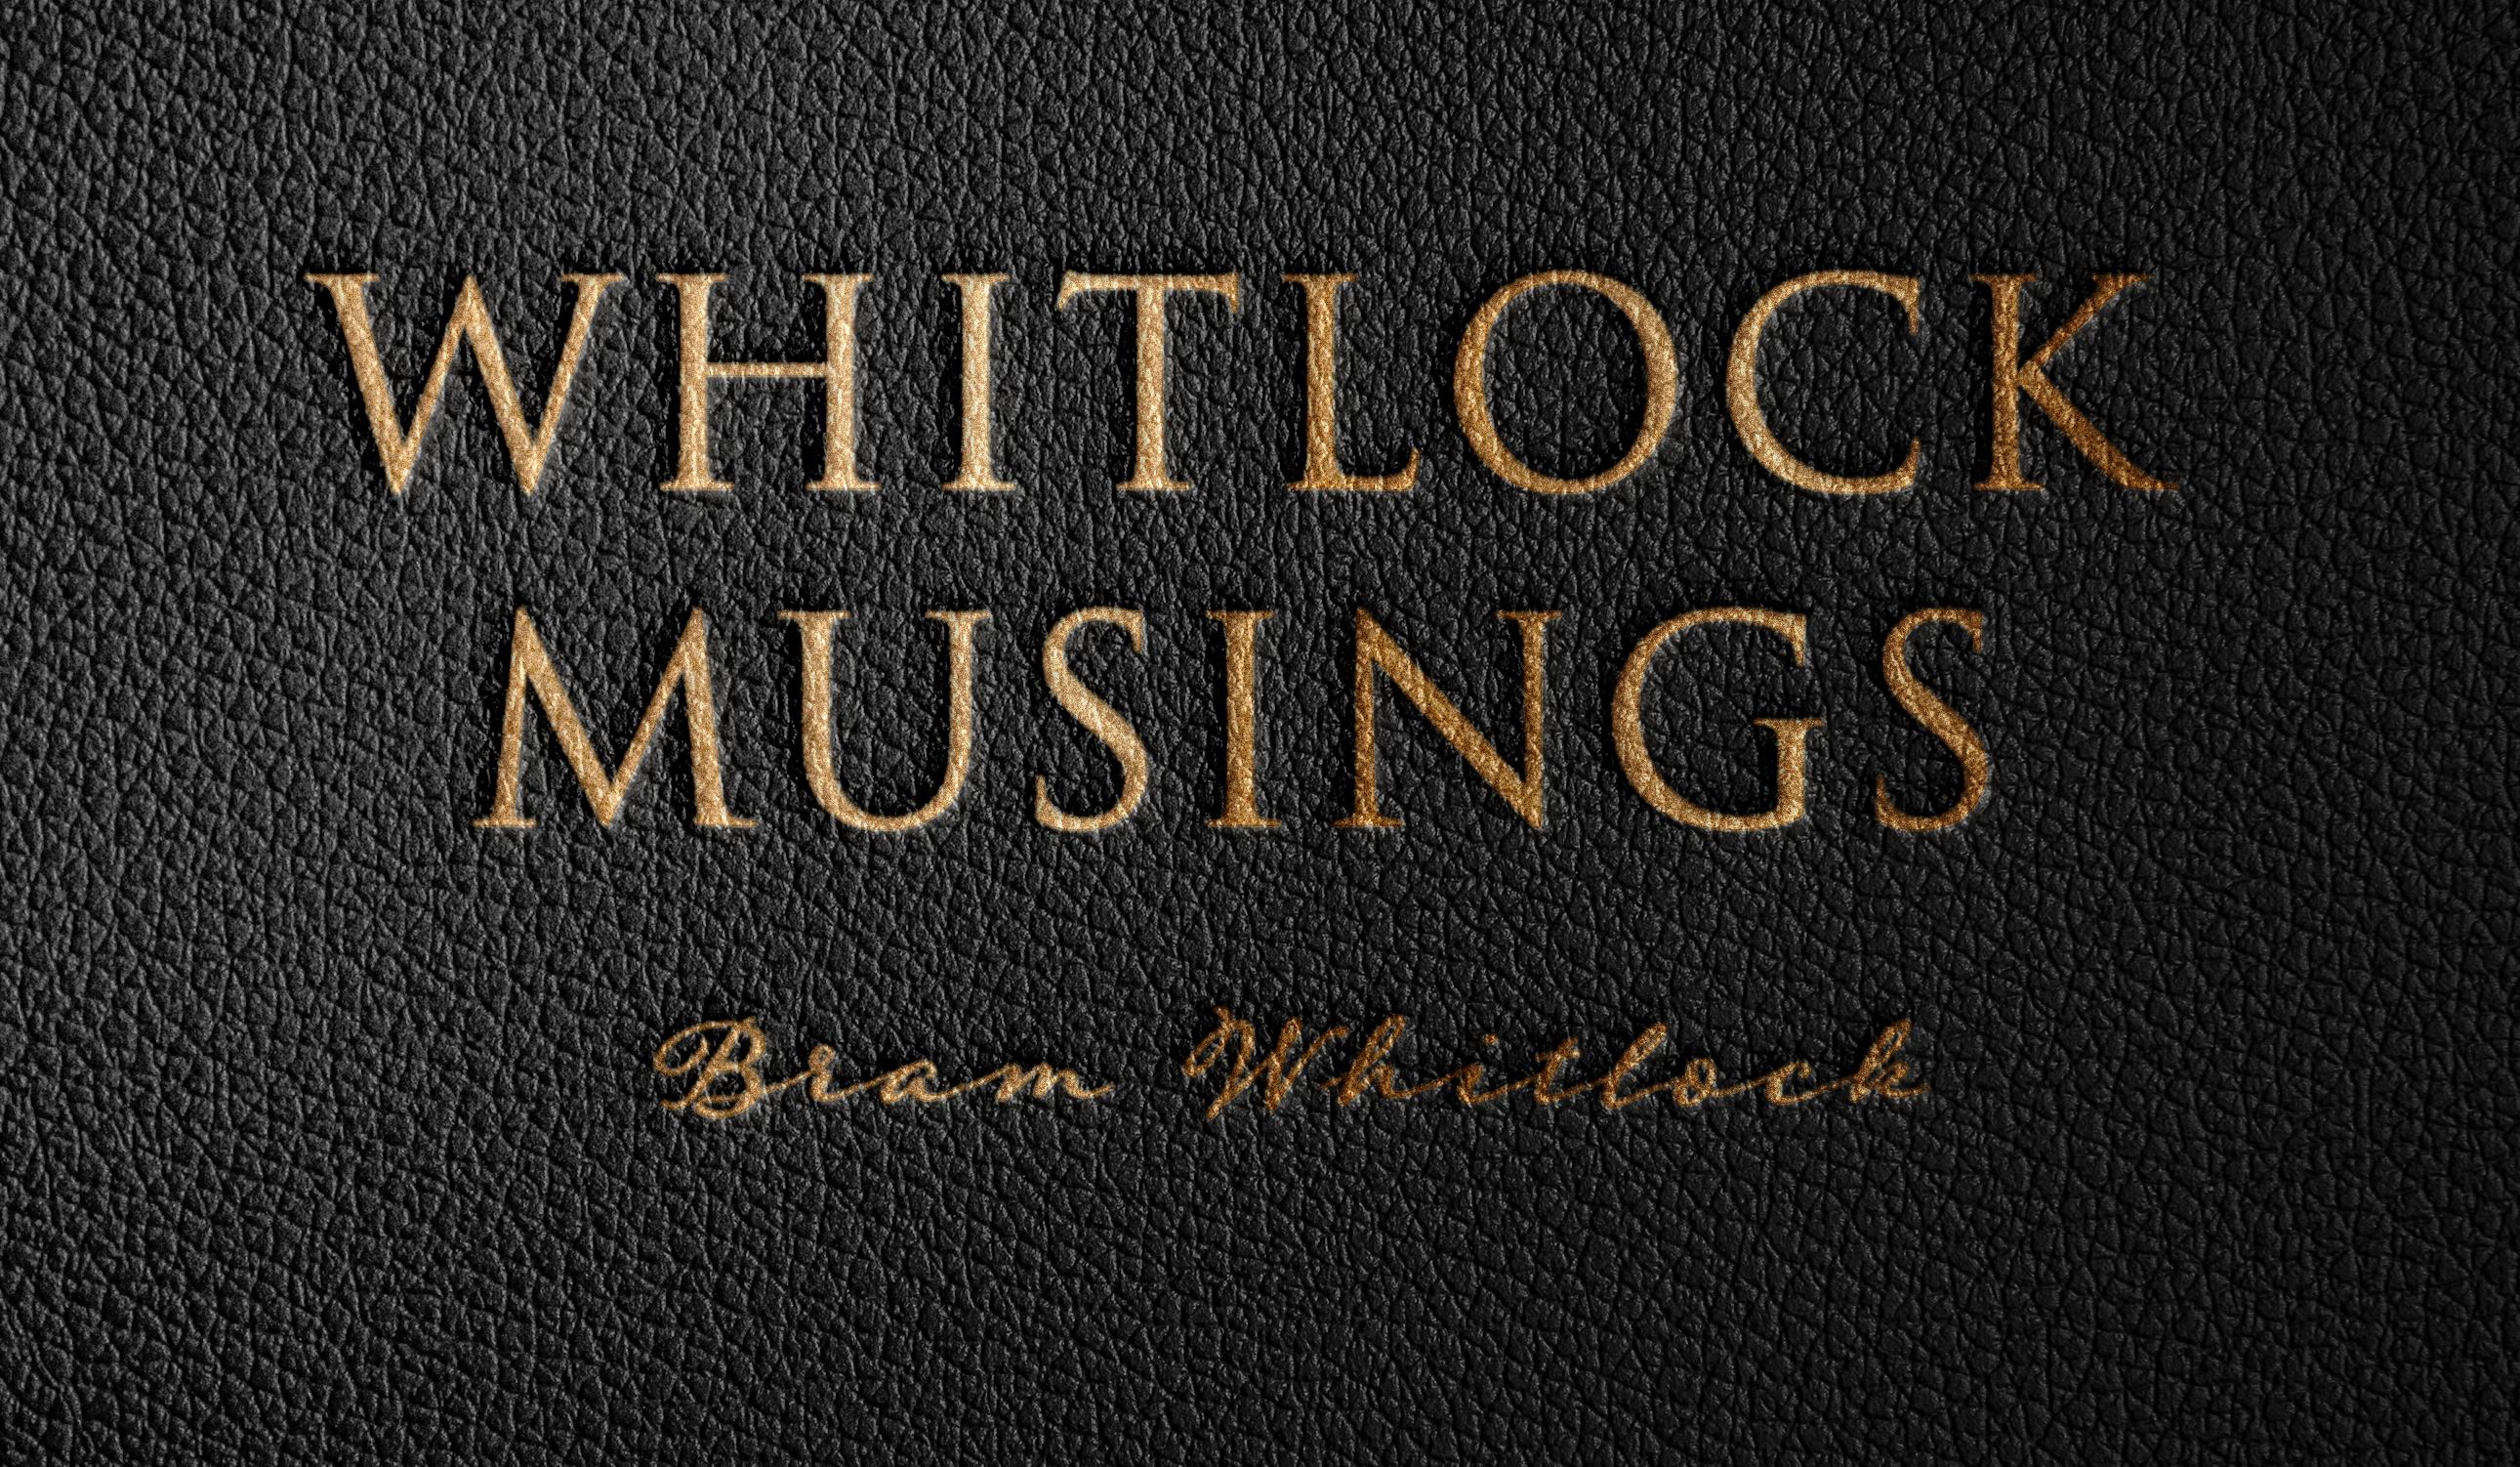 Whitlock Musings